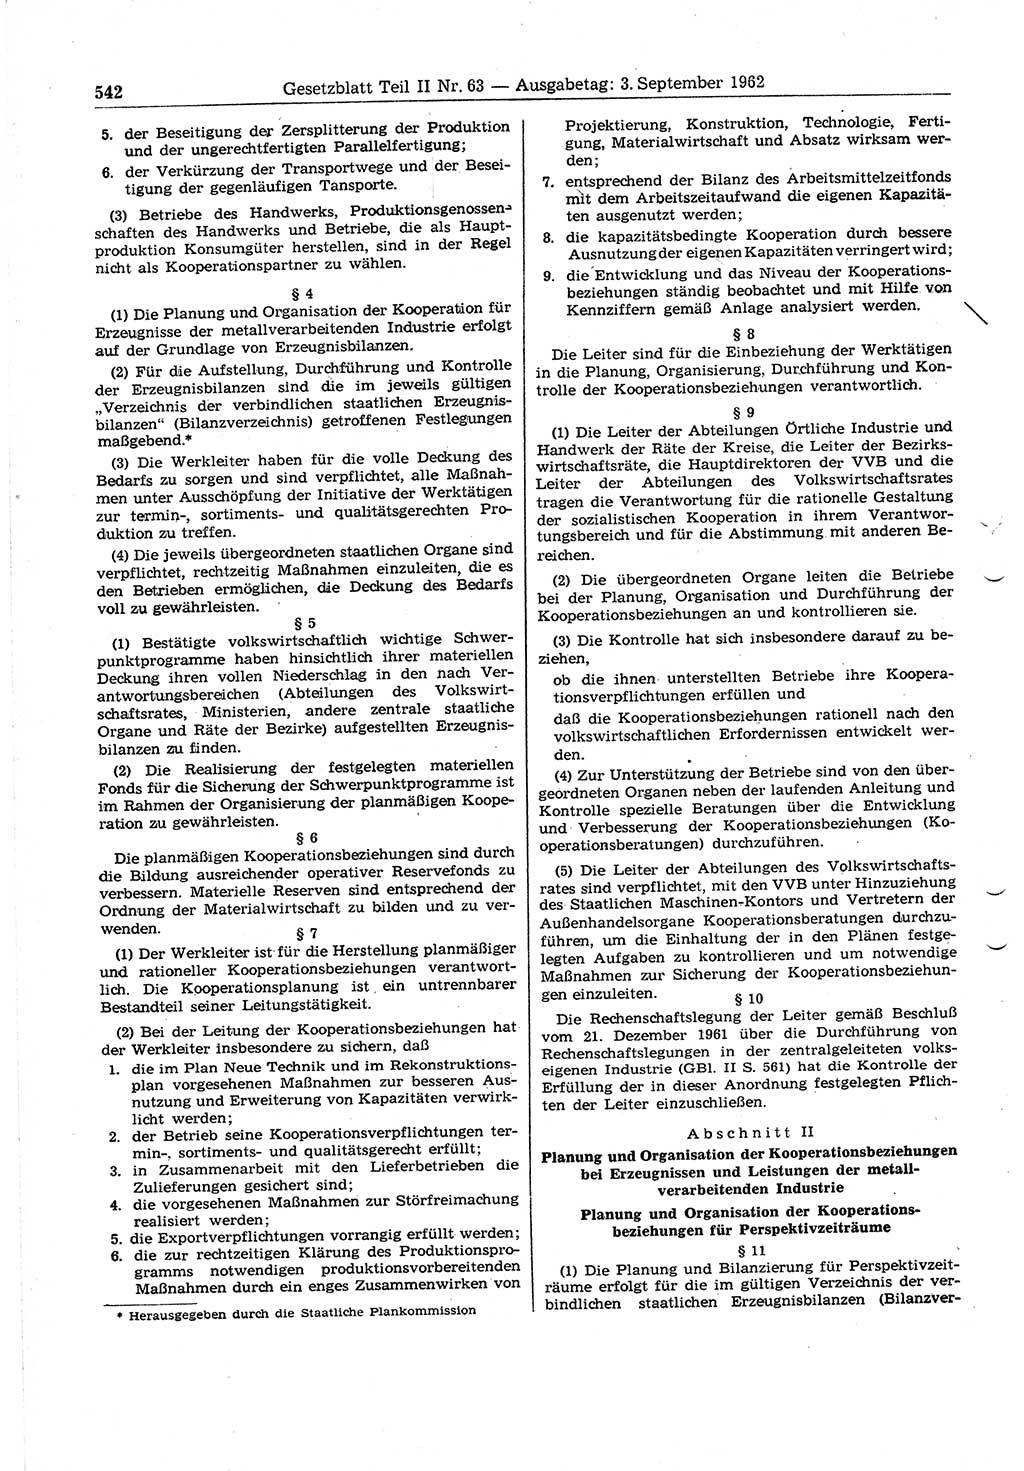 Gesetzblatt (GBl.) der Deutschen Demokratischen Republik (DDR) Teil ⅠⅠ 1962, Seite 542 (GBl. DDR ⅠⅠ 1962, S. 542)